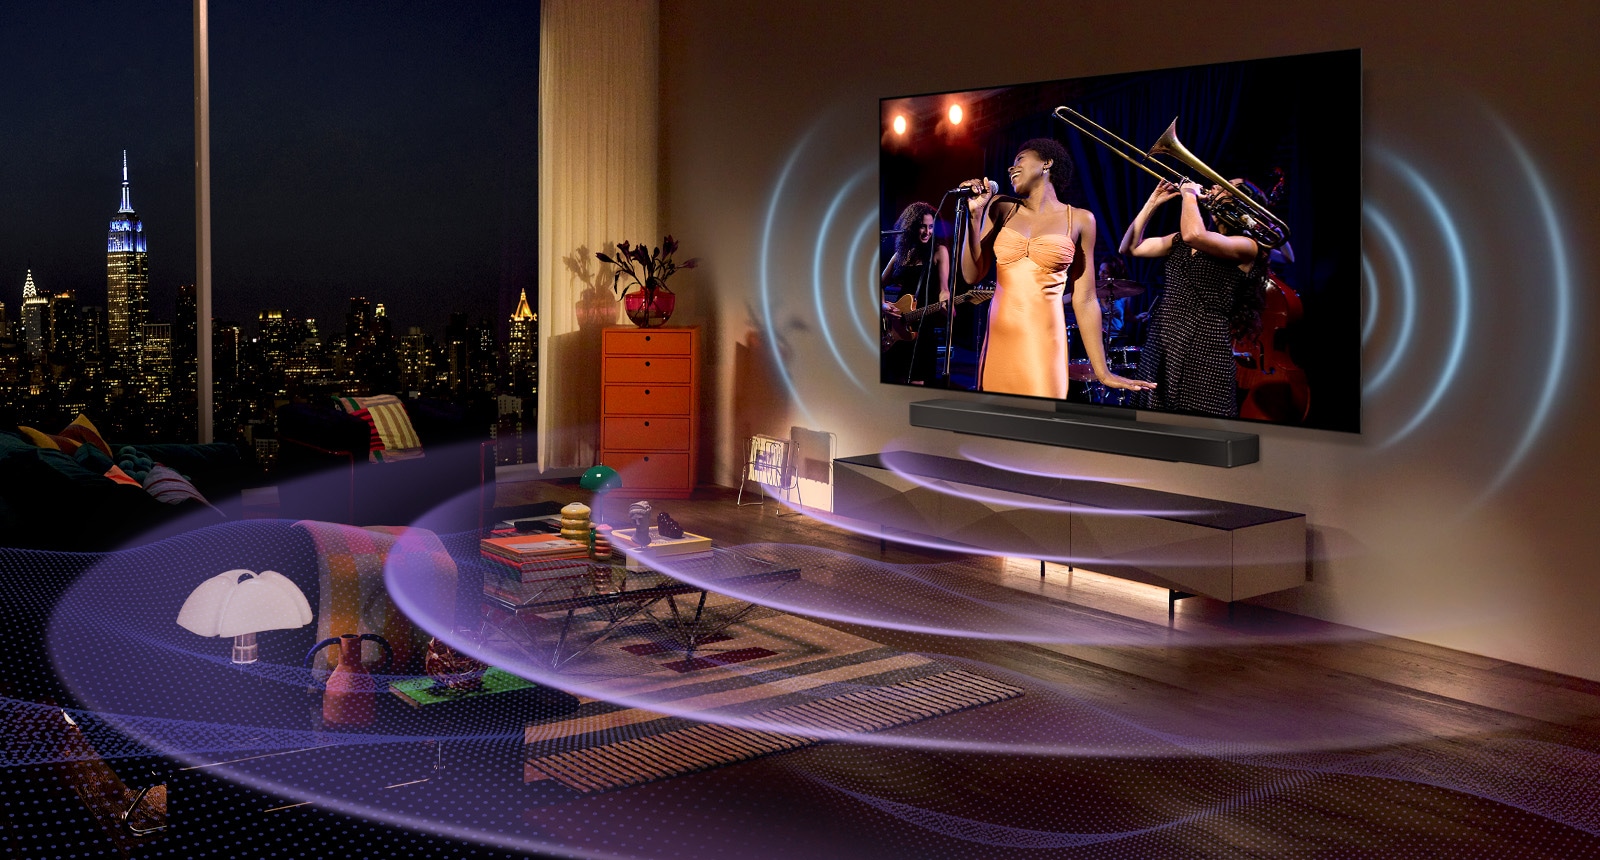 Slika televizorja LG OLED v sobi, ki prikazuje glasbeni koncert.  Modre ukrivljene črte opisujejo zvok televizorja, vijolične ukrivljene črte pa predstavljajo zvok Soundbara, ki zapolnjuje prostor.